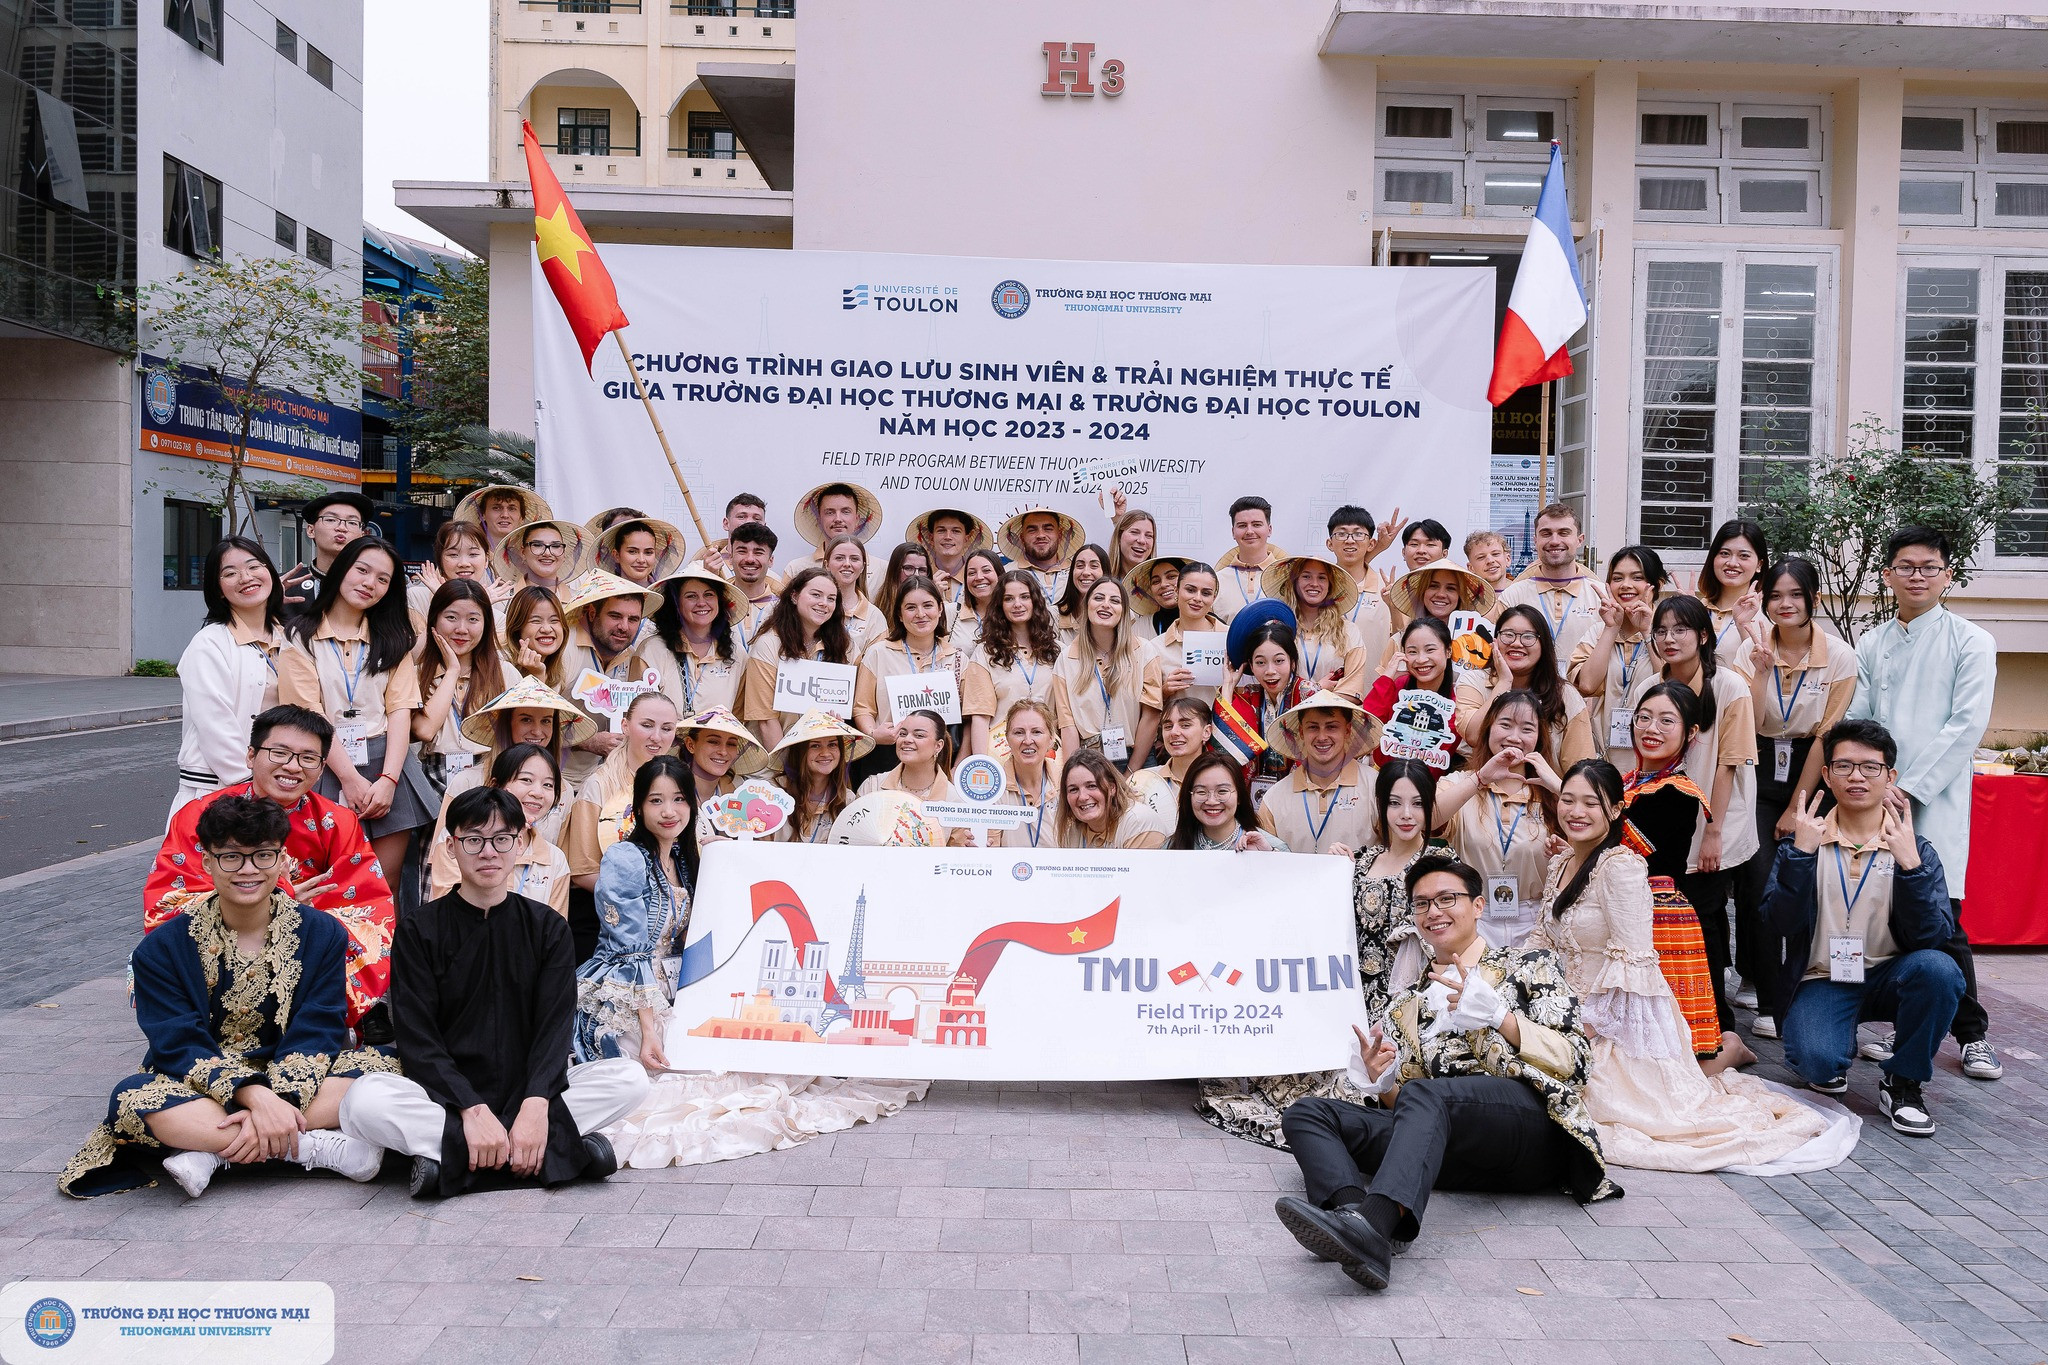 Lễ hội giao lưu văn hoá Việt - Pháp chào đón đoàn ĐH Toulon, Pháp trong chuỗi chương trình giao lưu sinh viên và trải nghiệm thực tế giữa Trường ĐHTM và ĐH Toulon